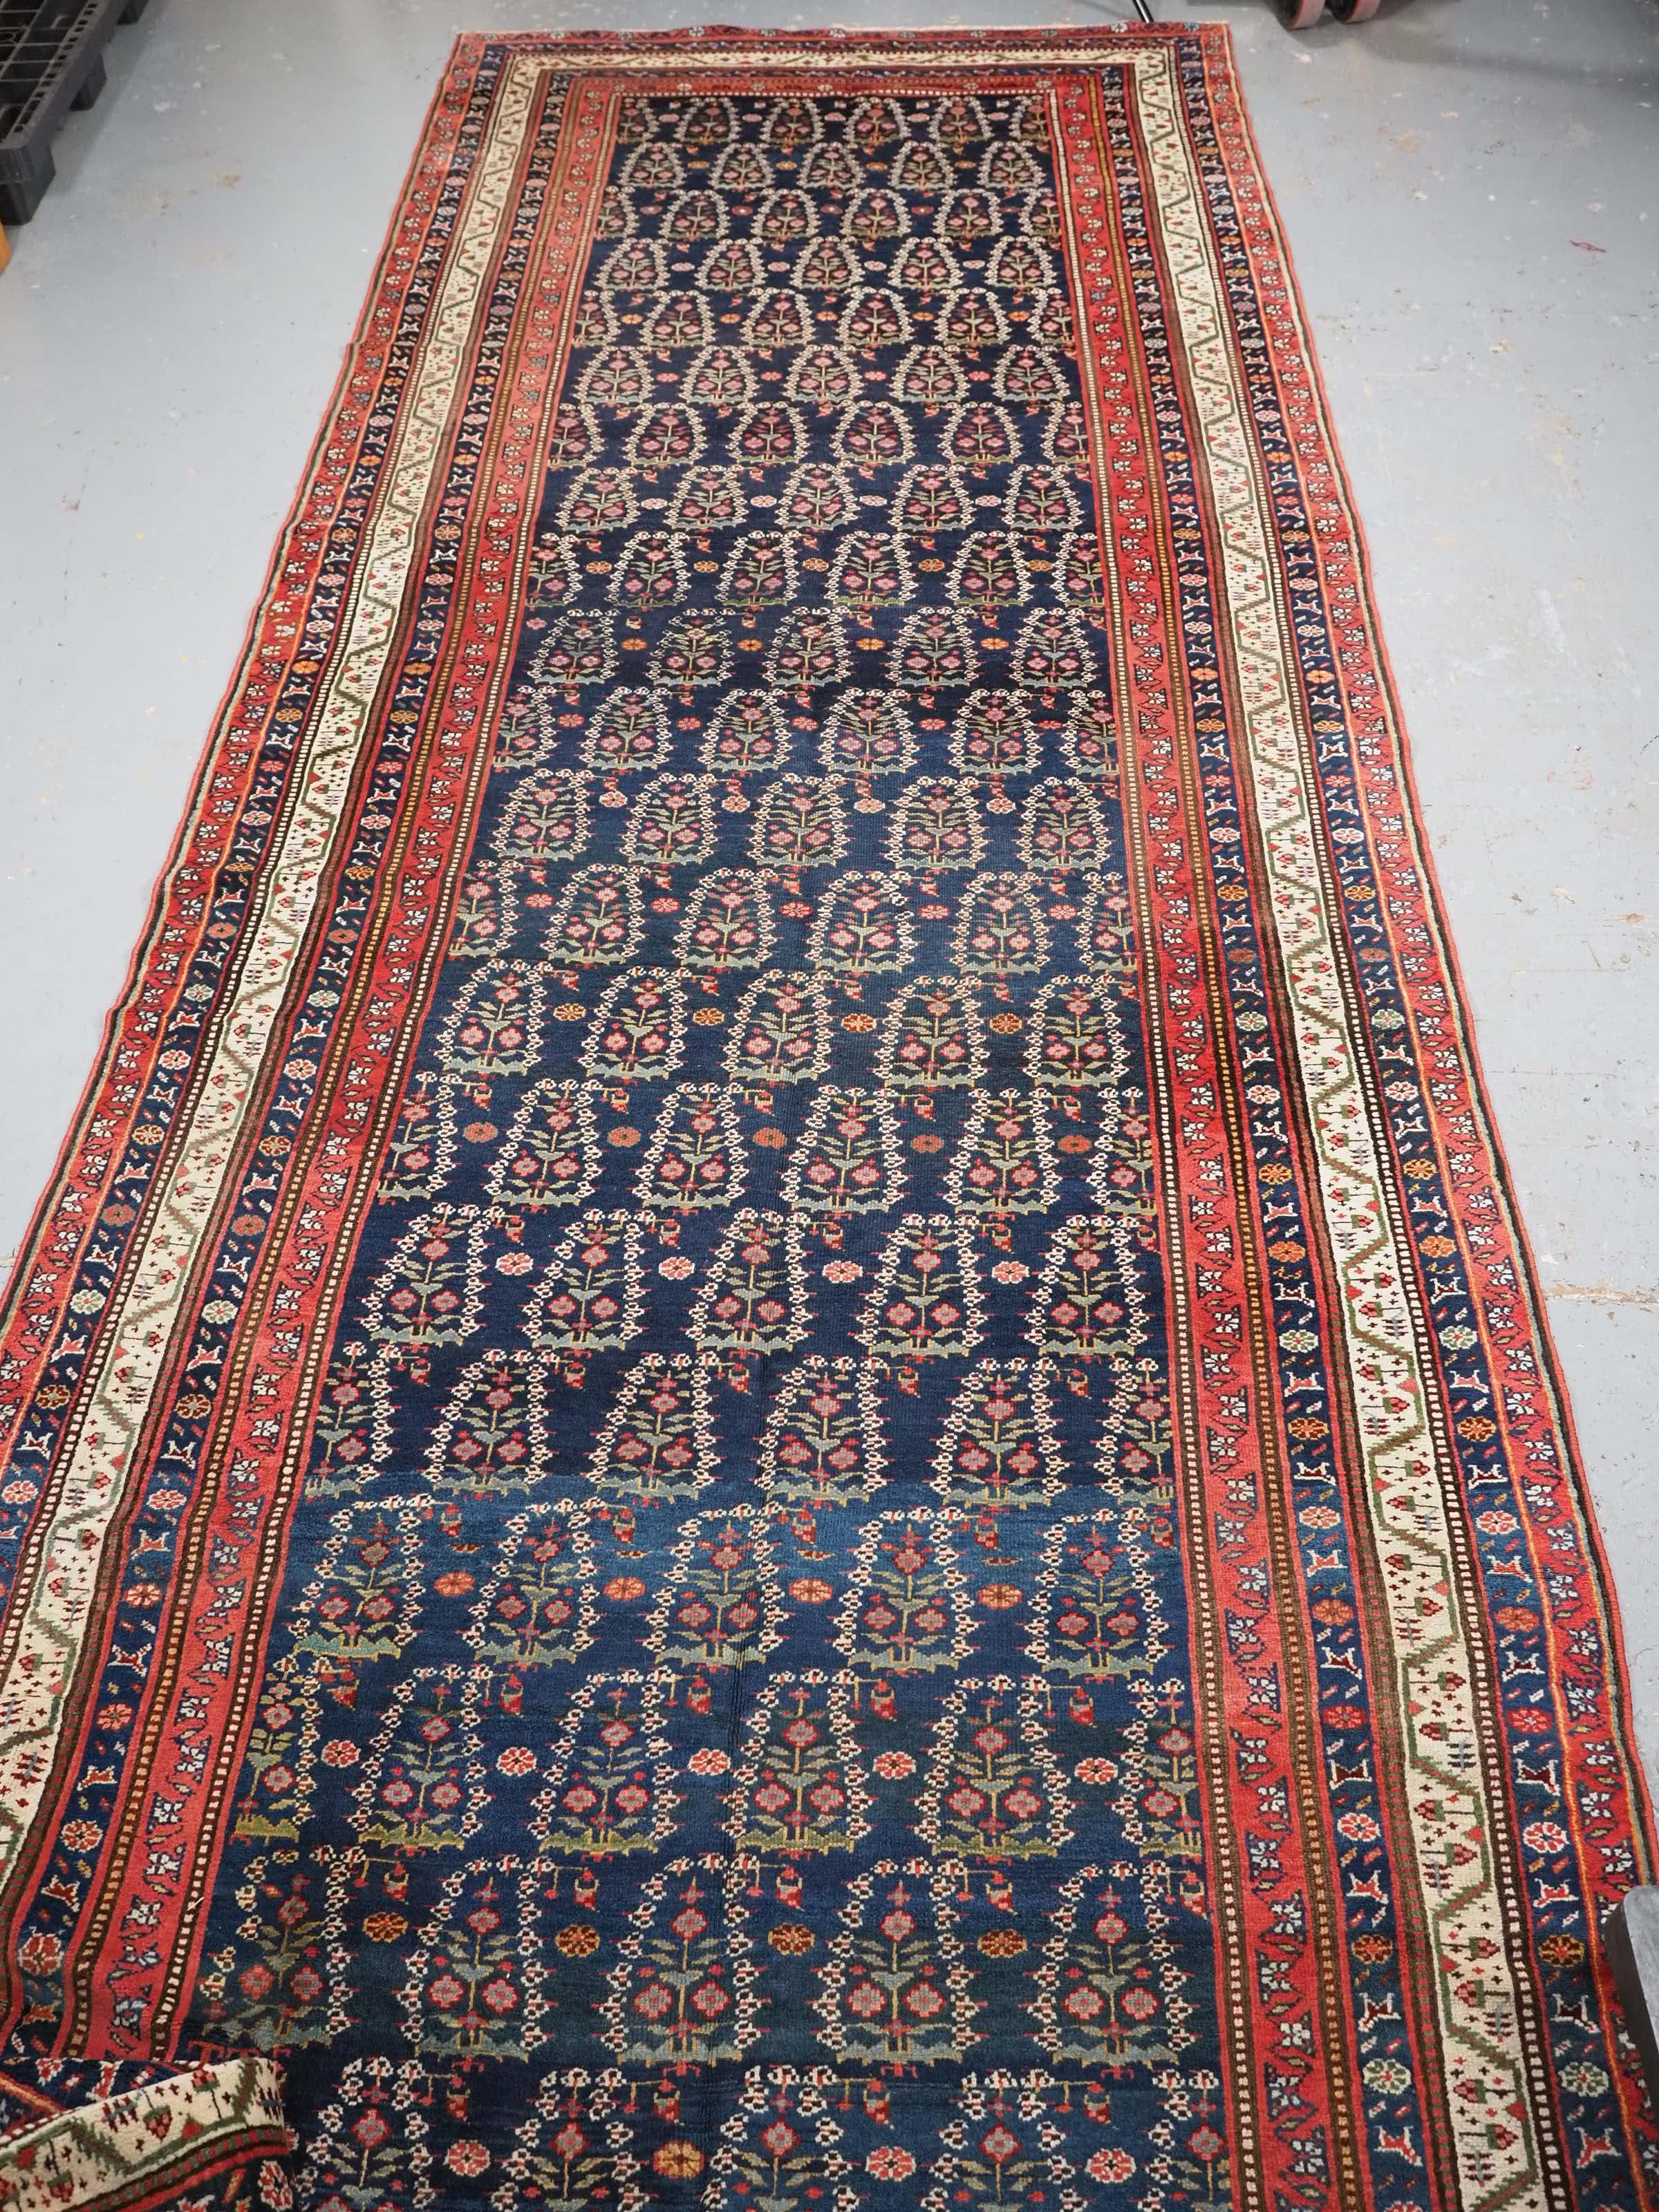 
Taille : 520 x 160 cm.

Tapis kelleh kurde ancien ou grand chemin de couloir avec motif boteh sur toute sa surface.

Circa 1900.

Le tapis présente un motif floral boteh sur un fond bleu indigo foncé. Les boteh sont magnifiquement dessinés avec de